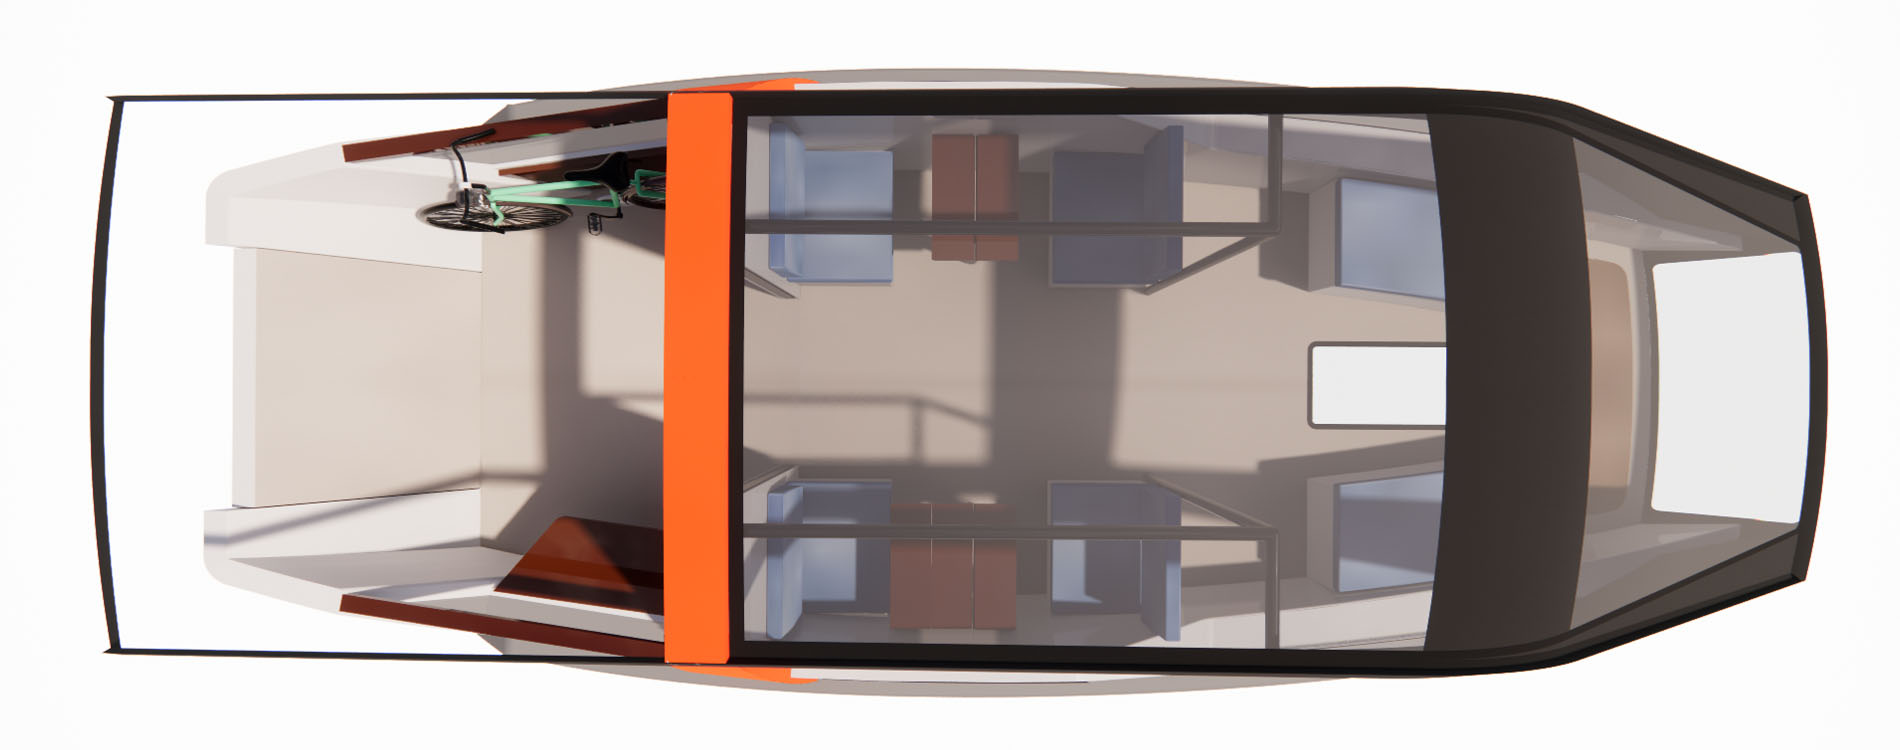 NEAC-autonomous-electric-shuttle-Conception-Vincent-Lebailly-Architecture-naval-maritime-river-Transport